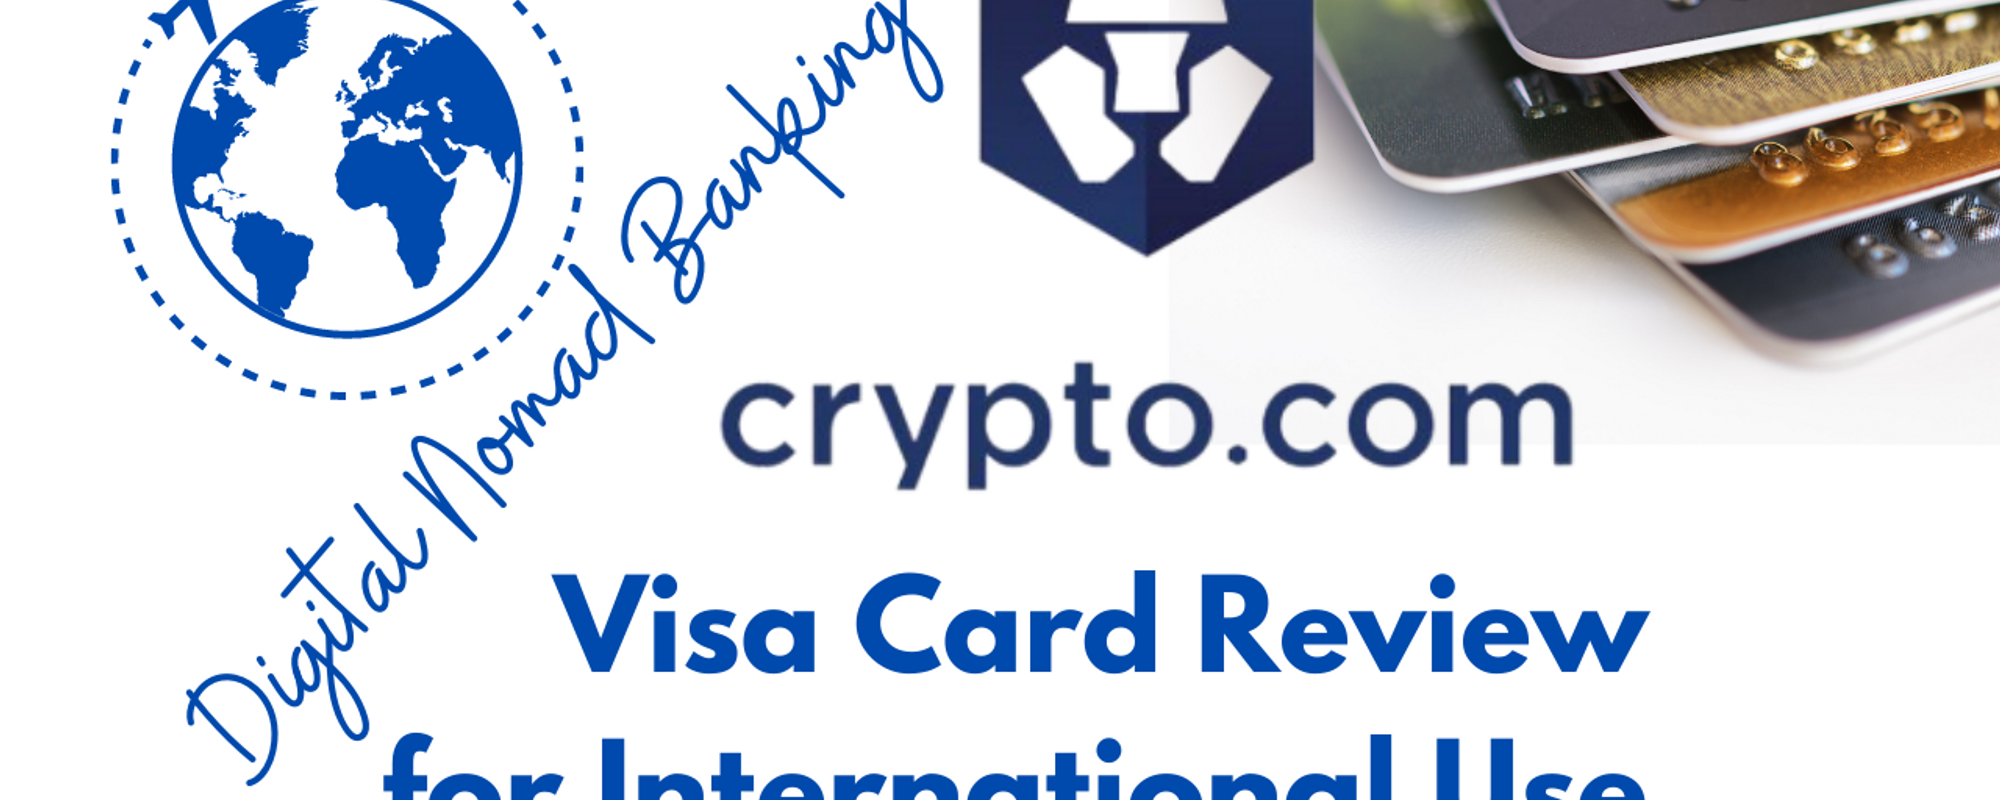 Crypto.com Review, Pros, Cons: International Visa Card for Digital Nomads & Travelers